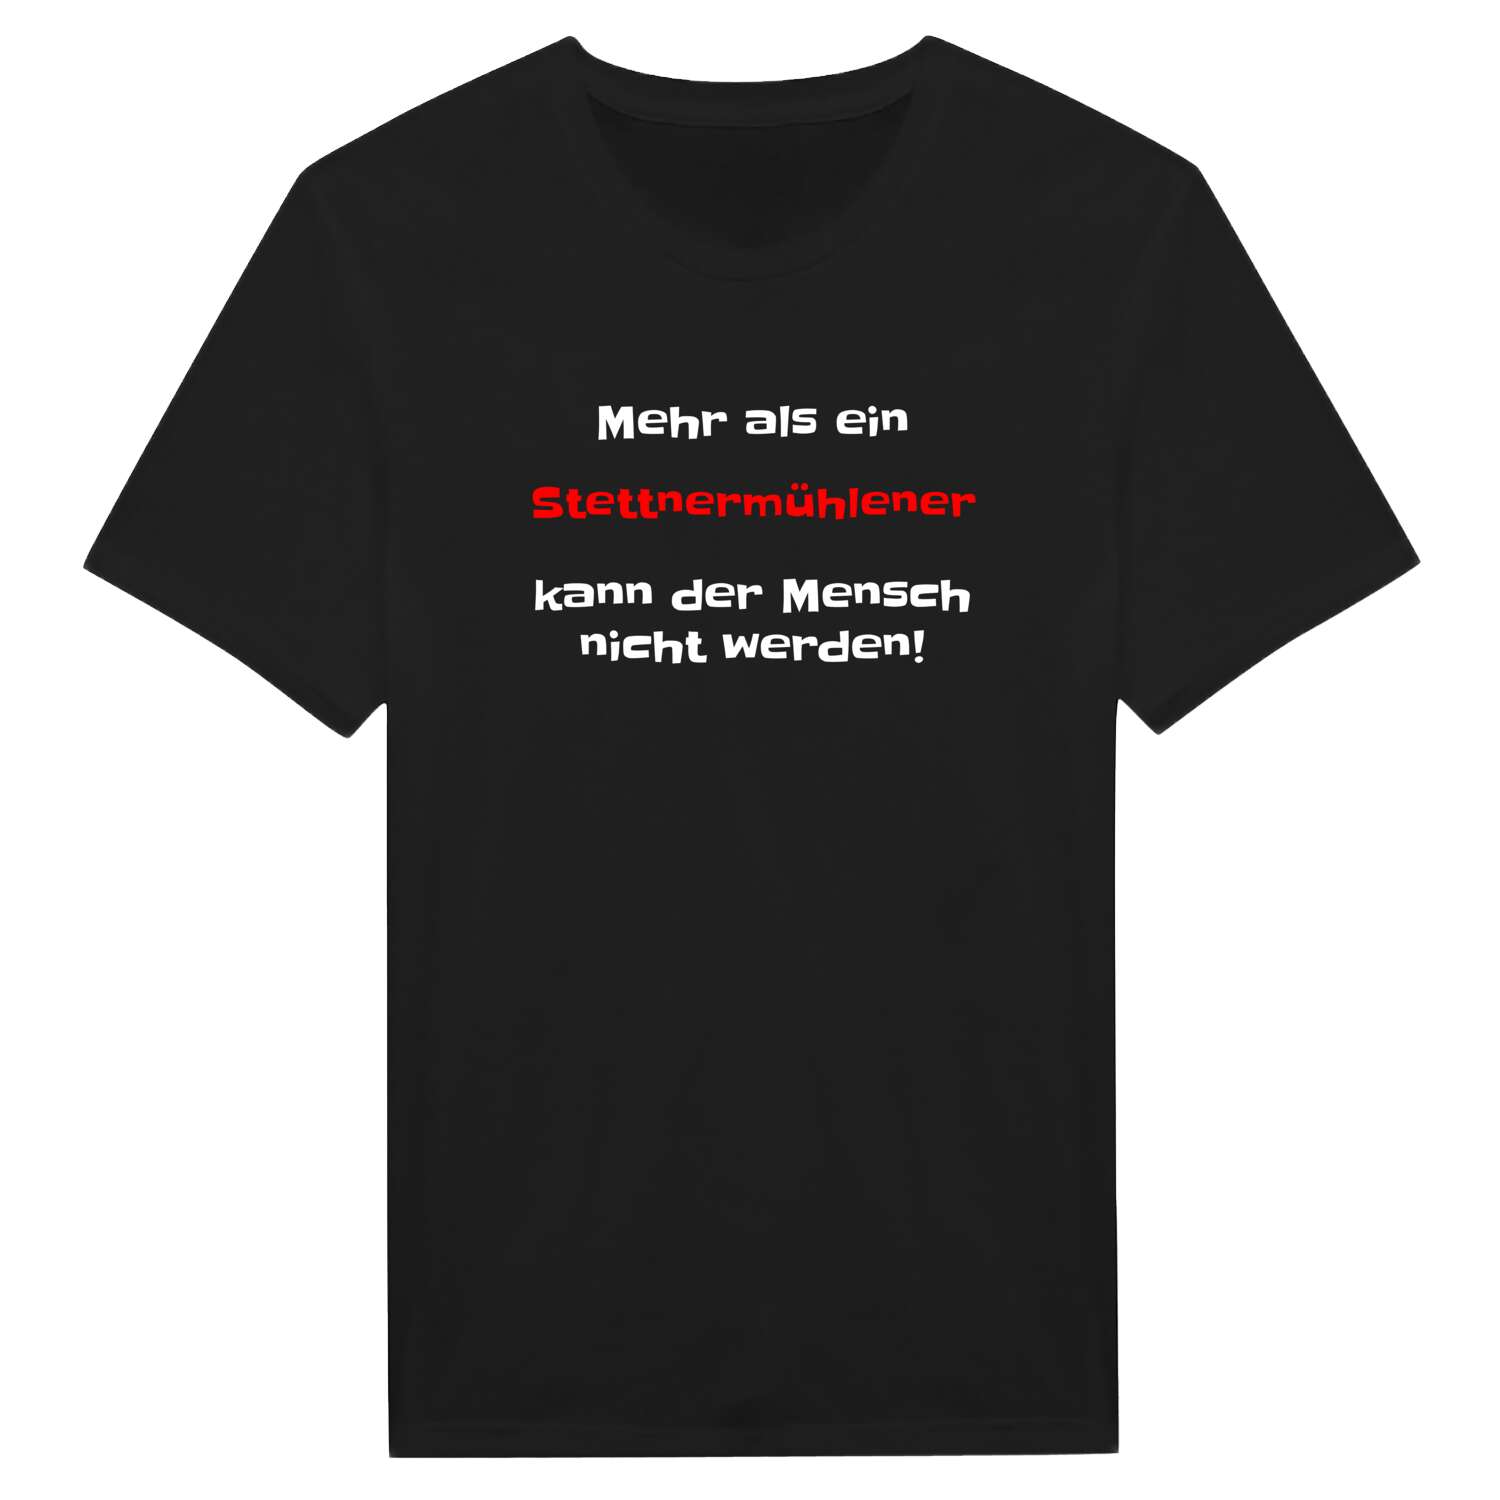 Stettnermühle T-Shirt »Mehr als ein«